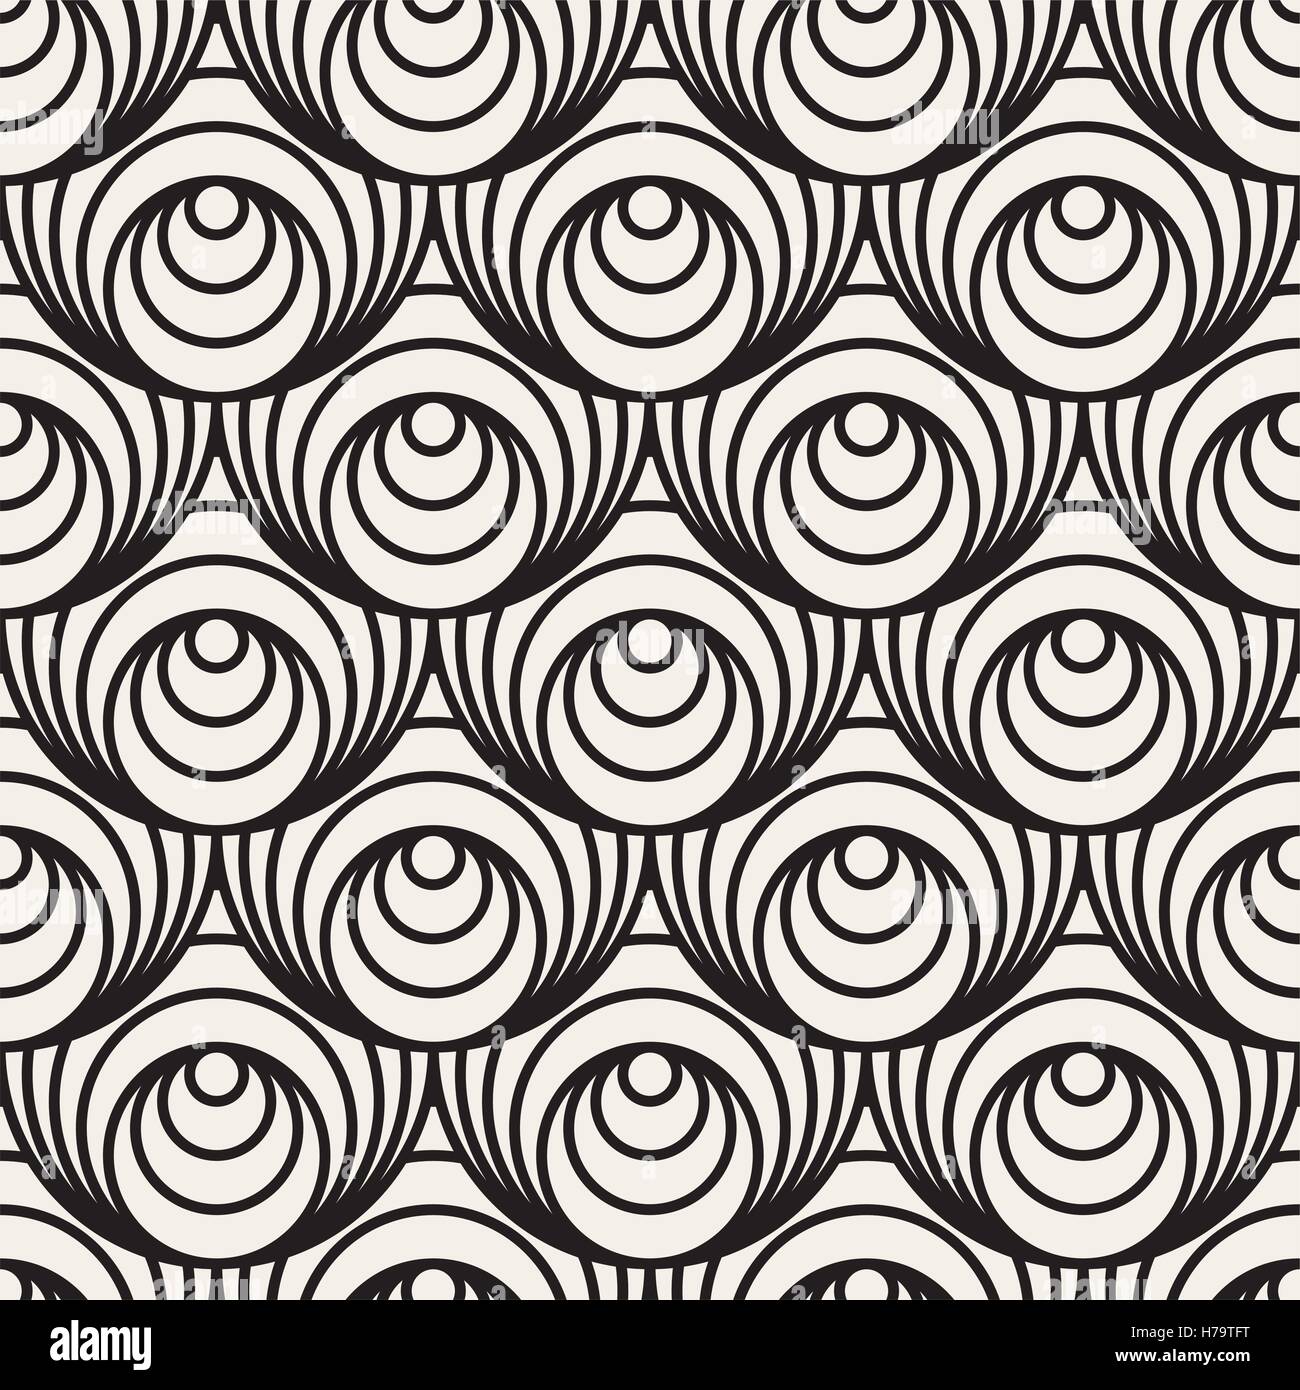 Seamless Vector des cercles concentriques en noir et blanc motif illusion optique Illustration de Vecteur